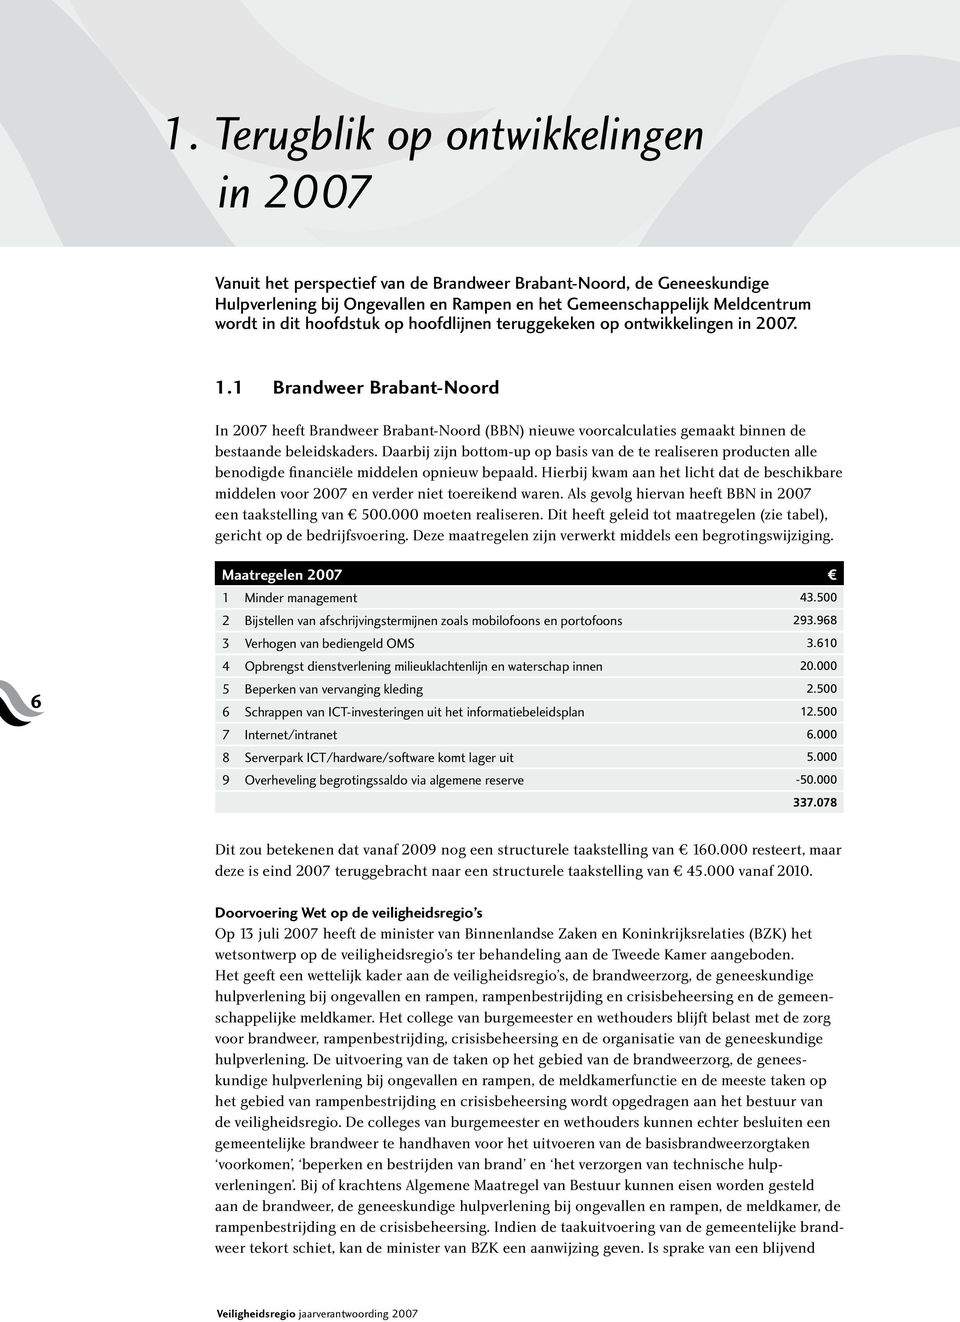 1 Brandweer Brabant-Noord In 2007 heeft Brandweer Brabant-Noord (BBN) nieuwe voorcalculaties gemaakt binnen de bestaande beleidskaders.